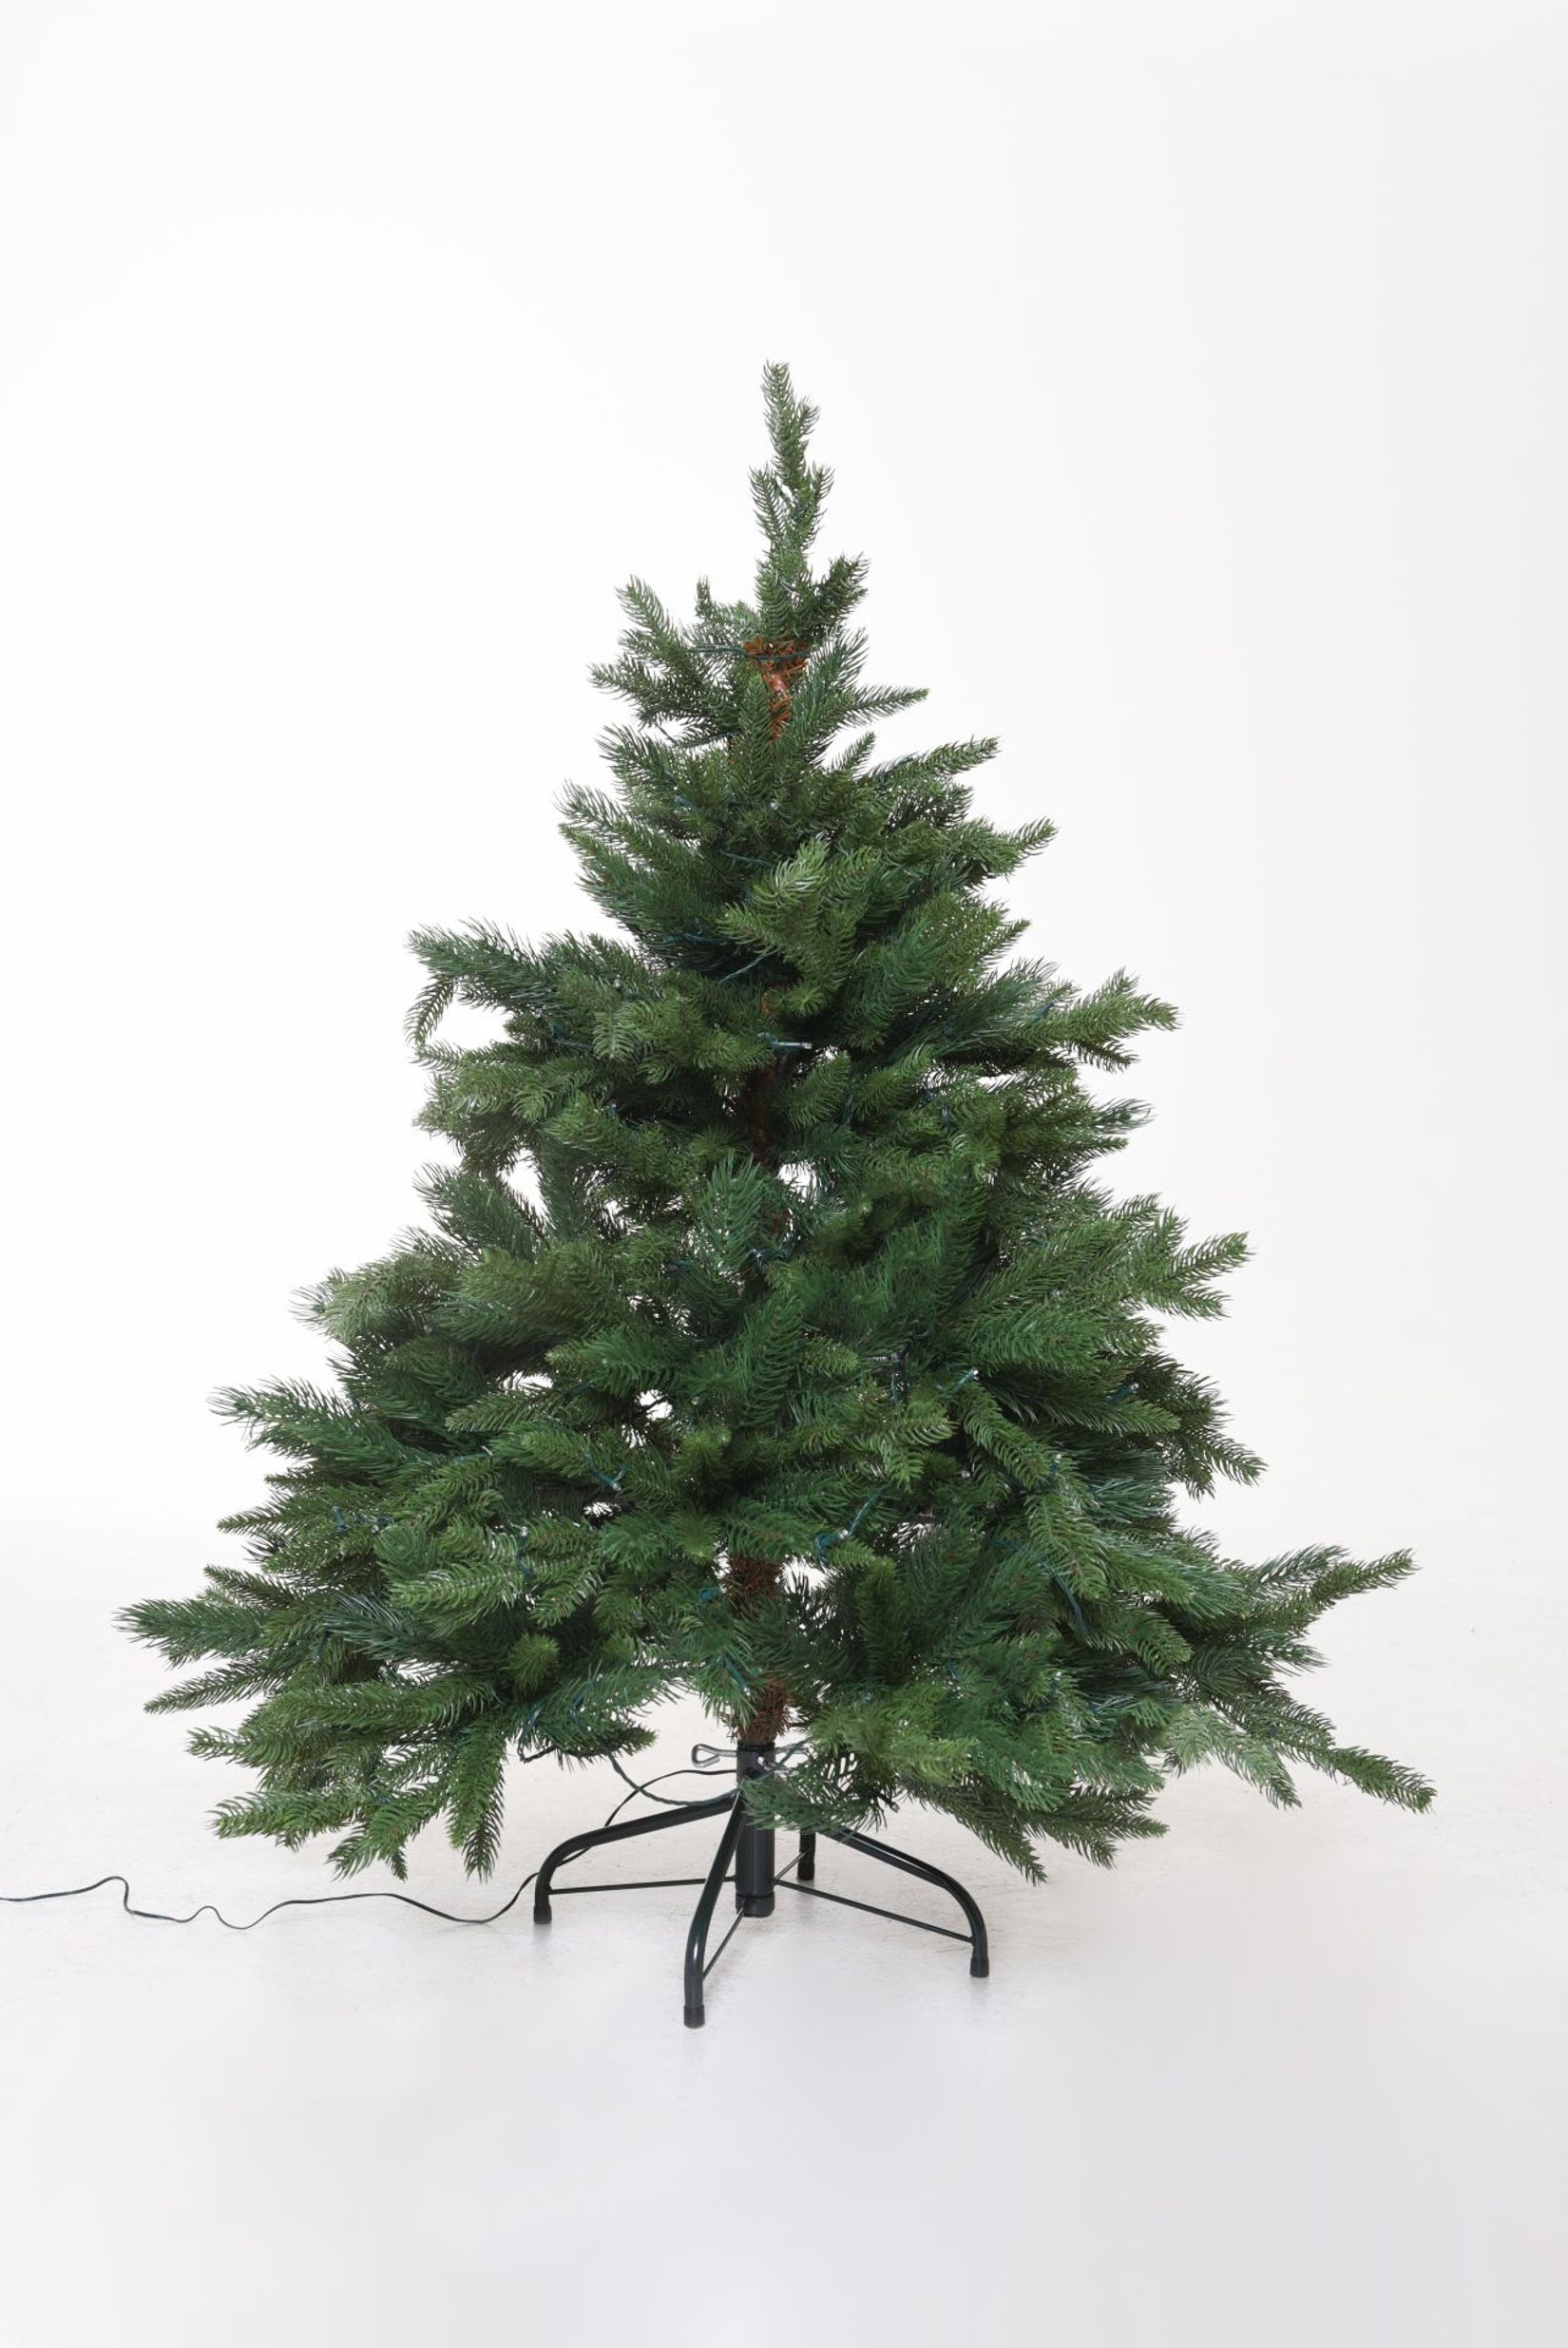 Künstlicher Premium Weihnachtsbaum Nordmanntanne LED, 120 cm hoch